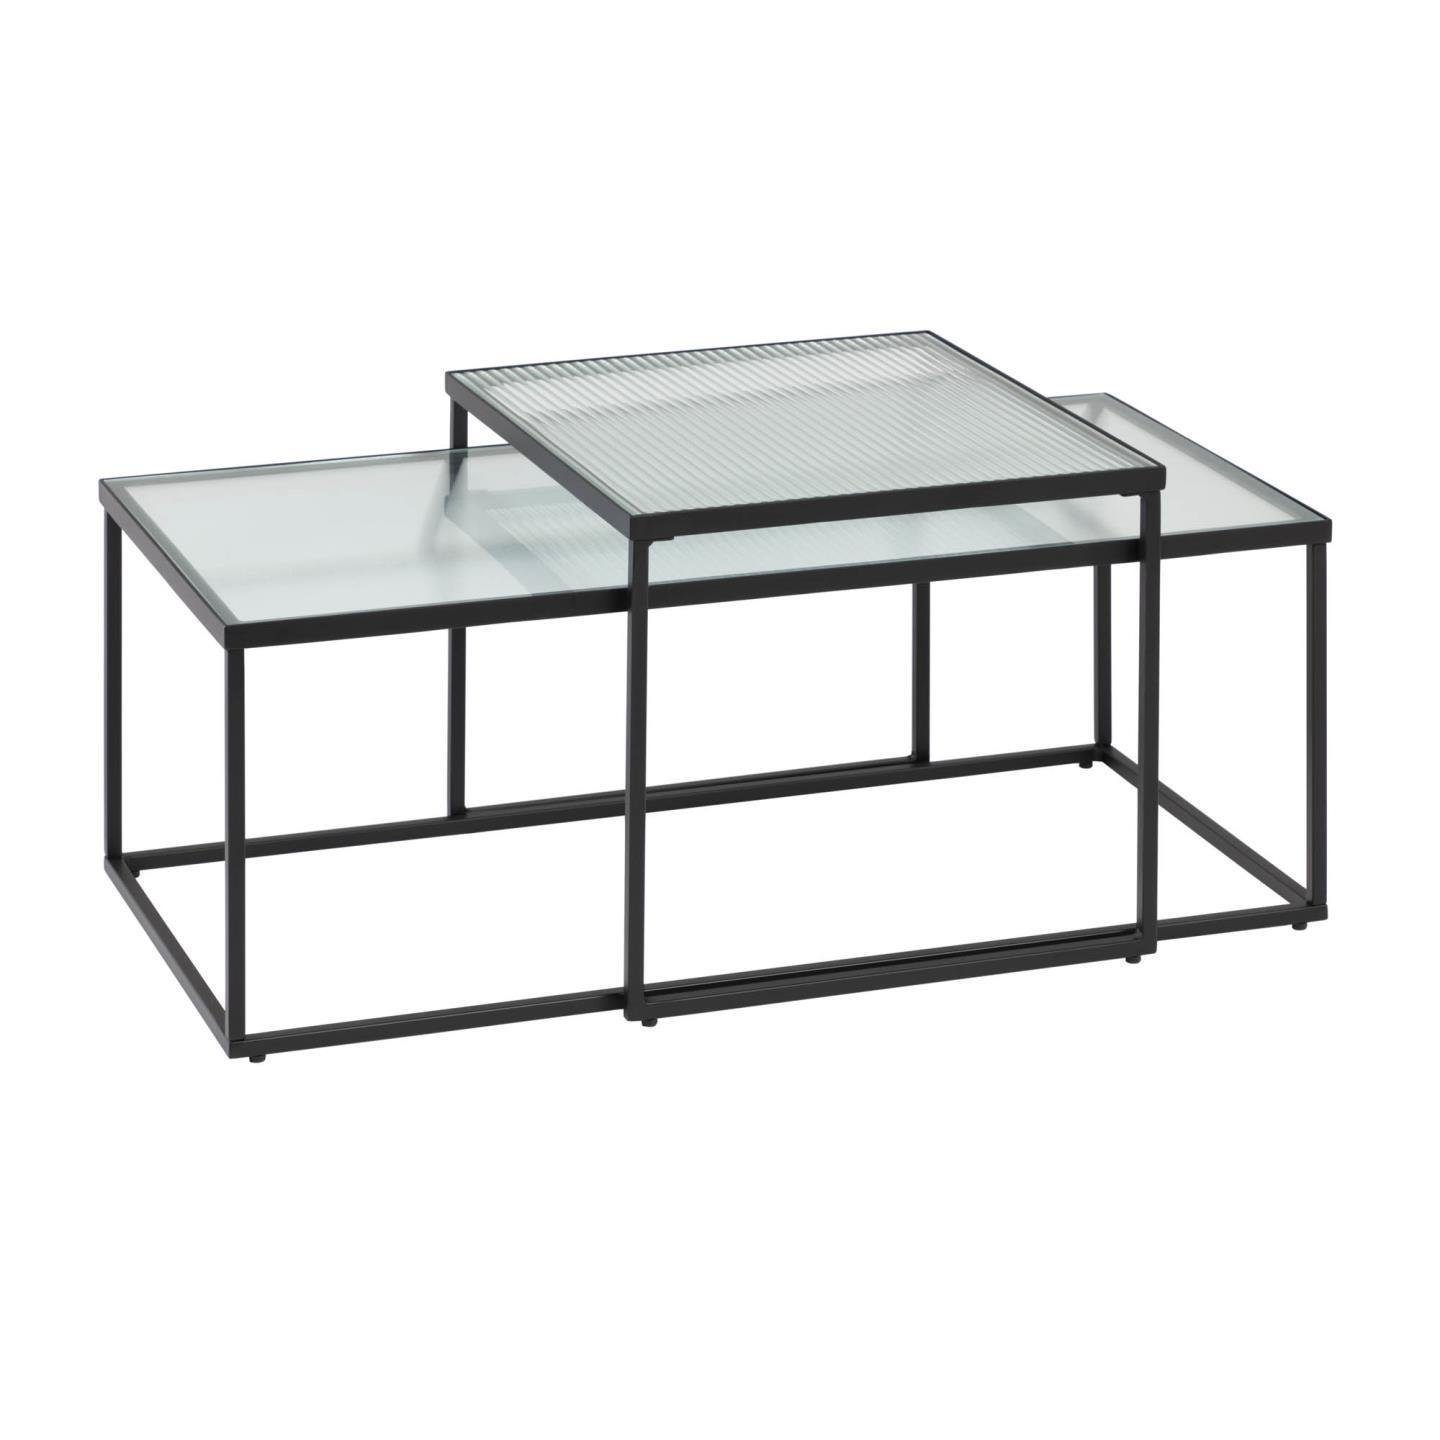 Akemi Beistelltisch Natur24 Glas Set 2 100x43x55cm Couchtischen Tisch Beistelltisch